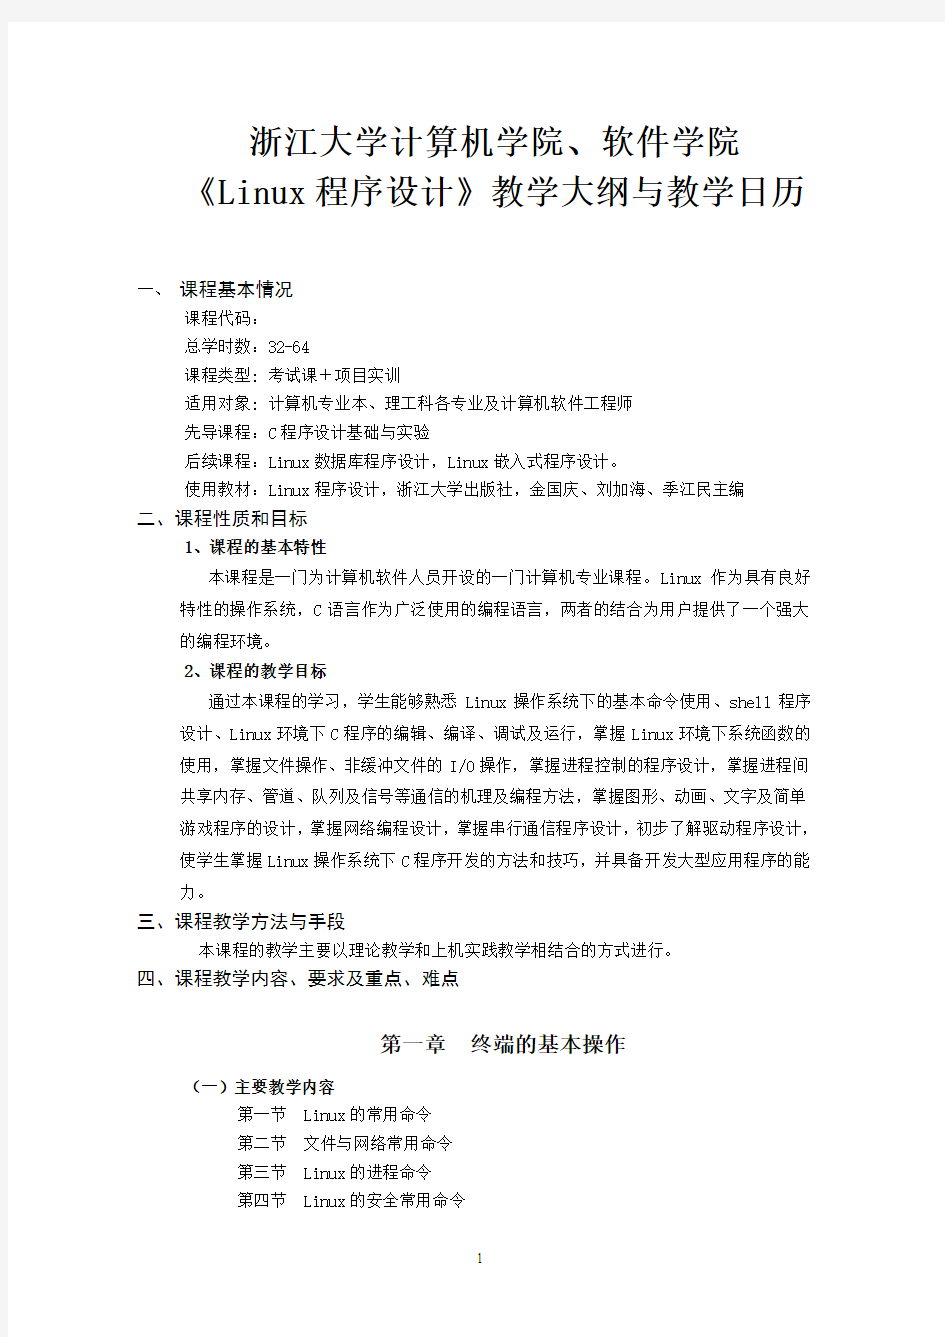 浙江大学Linux程序设计教学大纲与建议学时分配数-金国庆刘加海